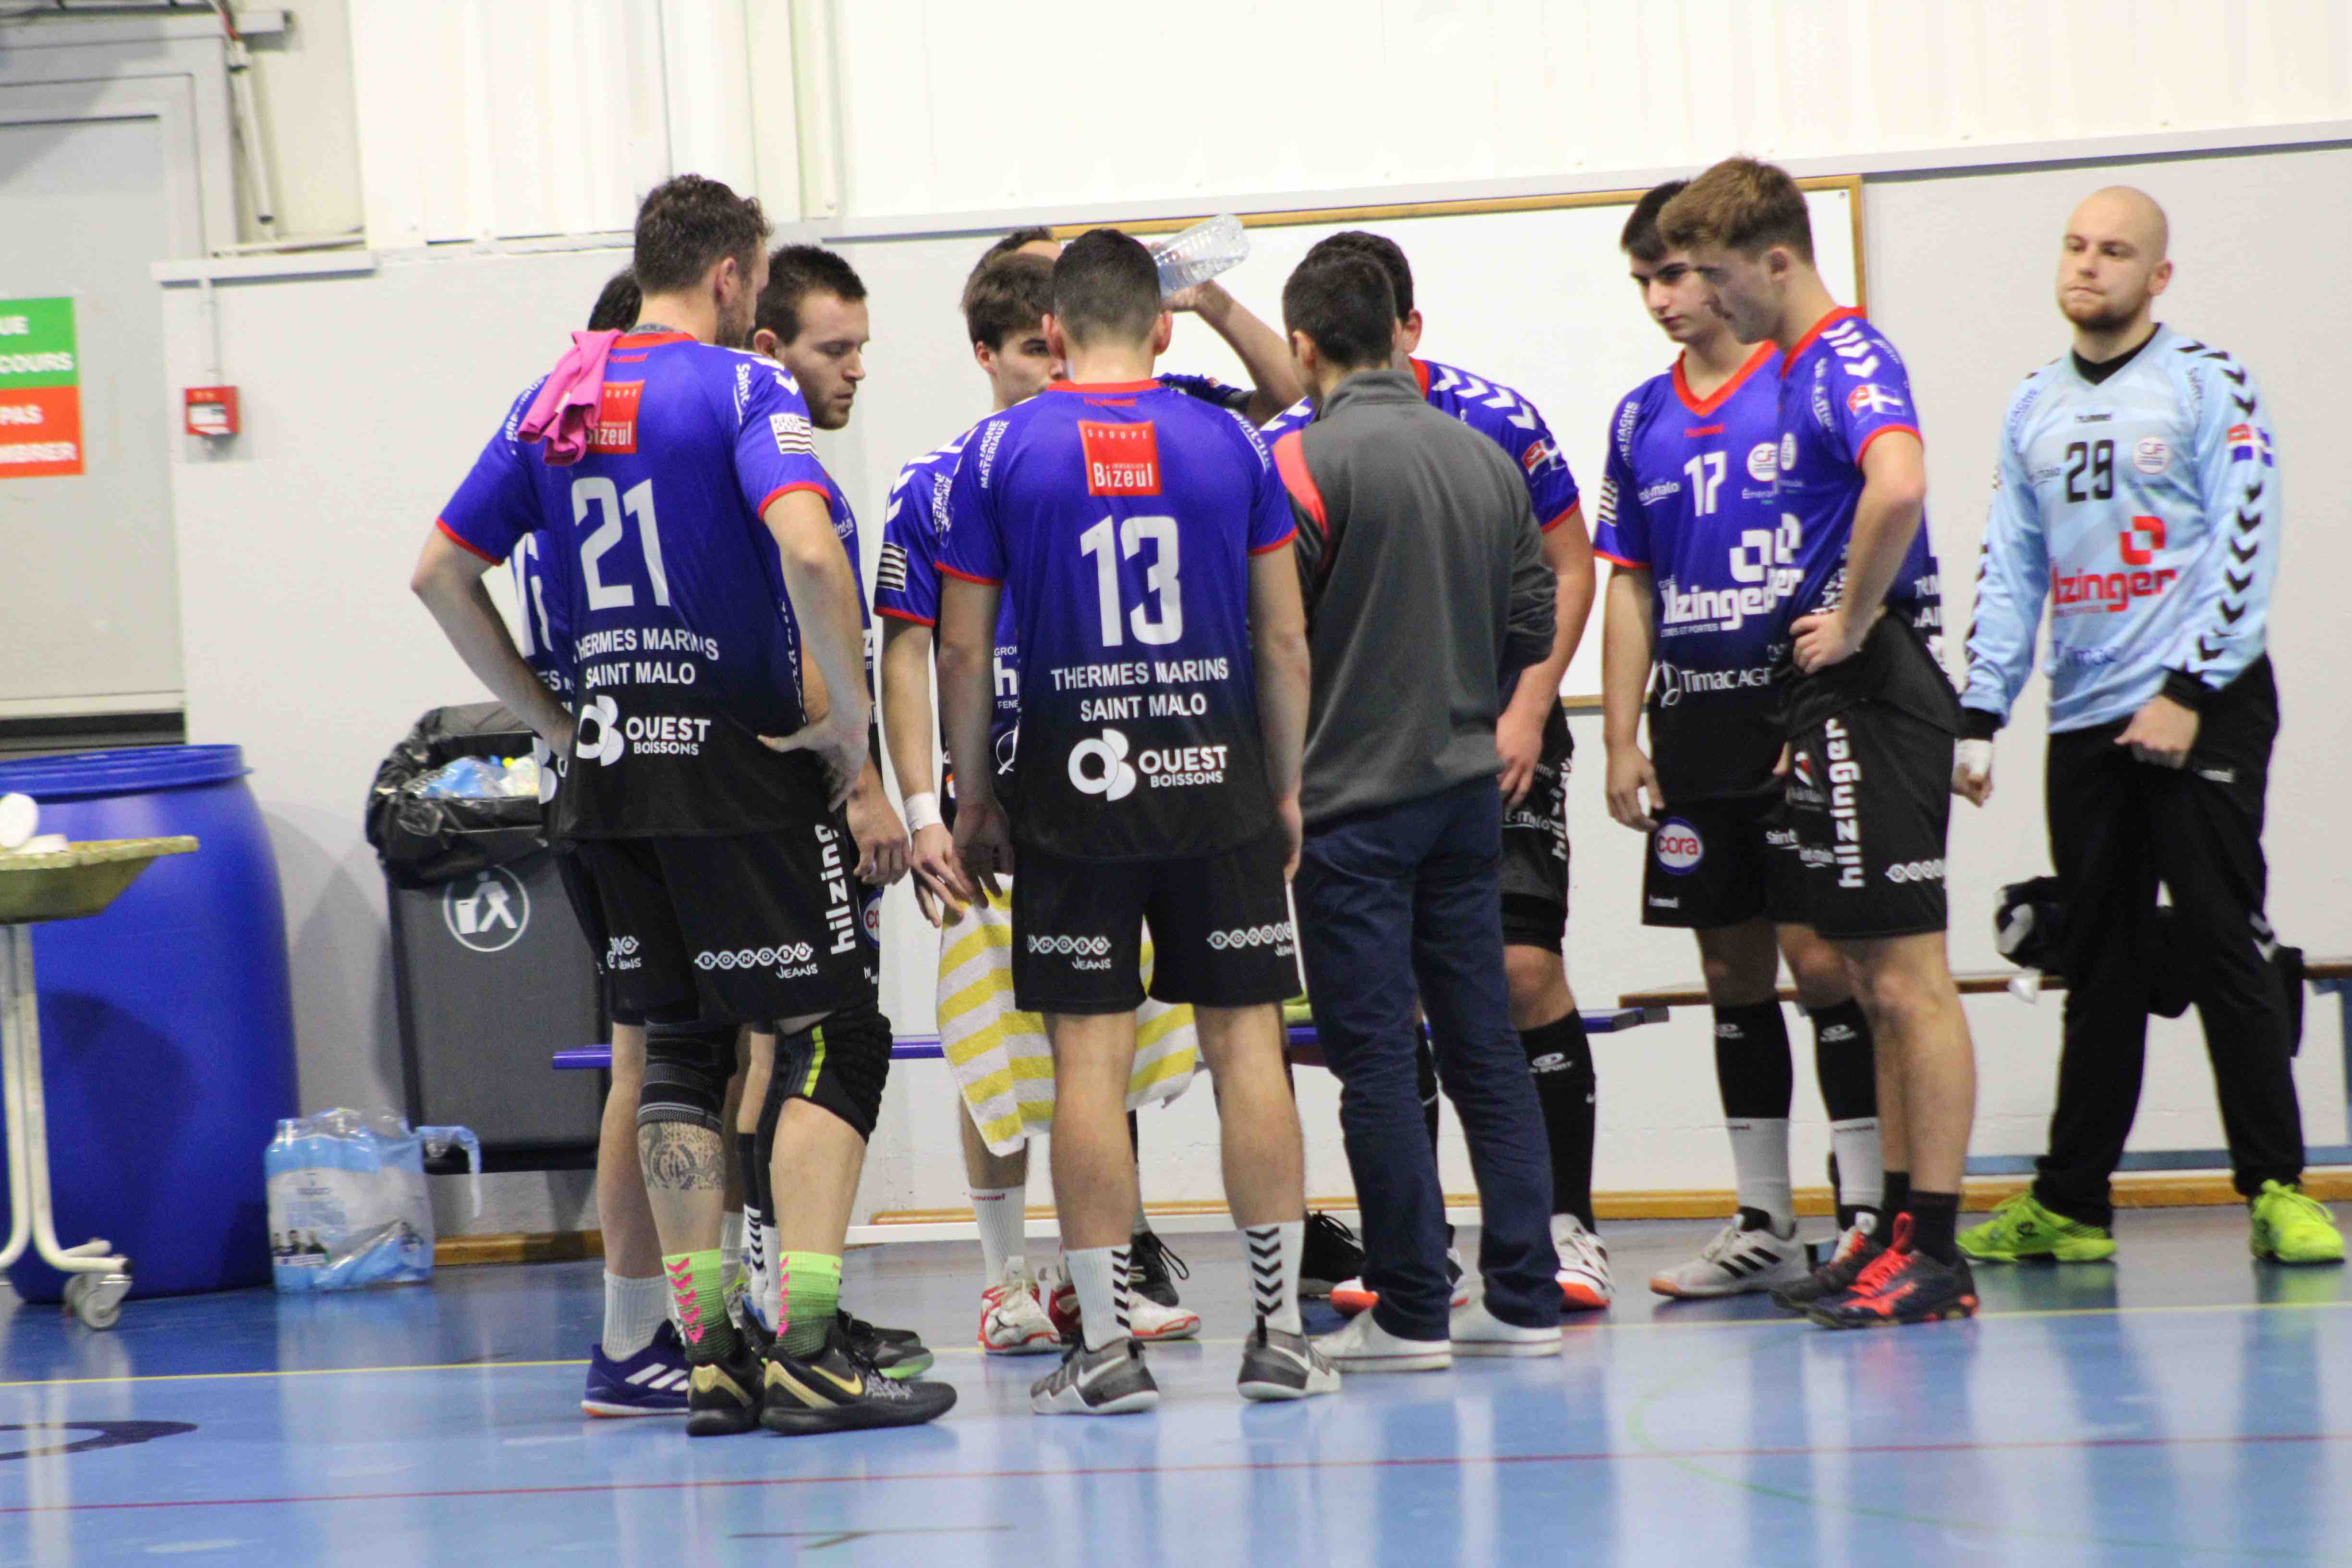 2019nov23 CJF hb _ SC handball (62)